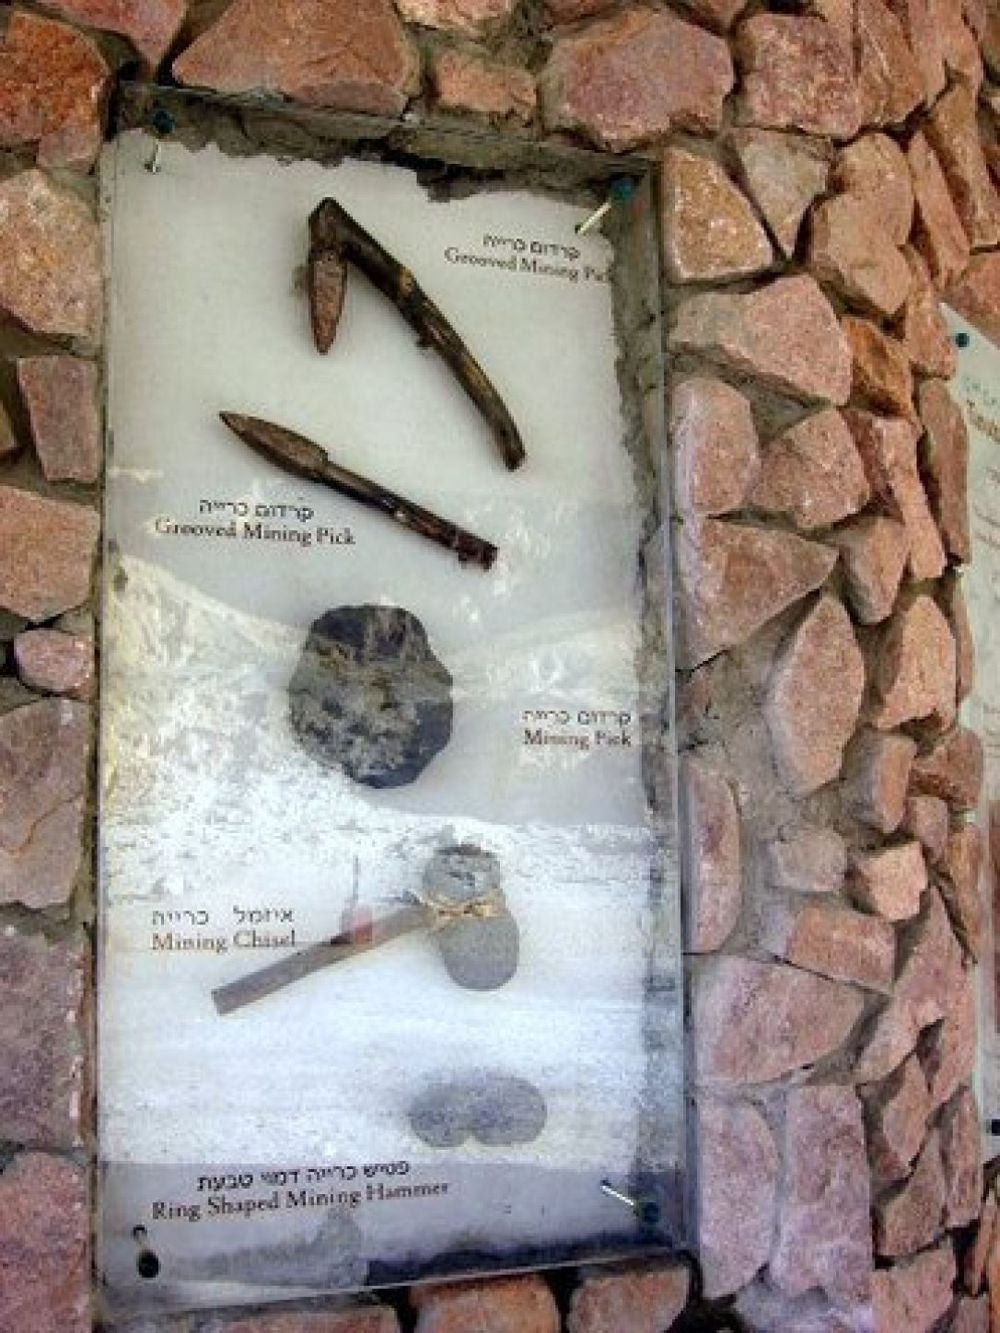 Herramientas mineras del período egipcio encontradas en Timna. (Crédito: Shumbla)